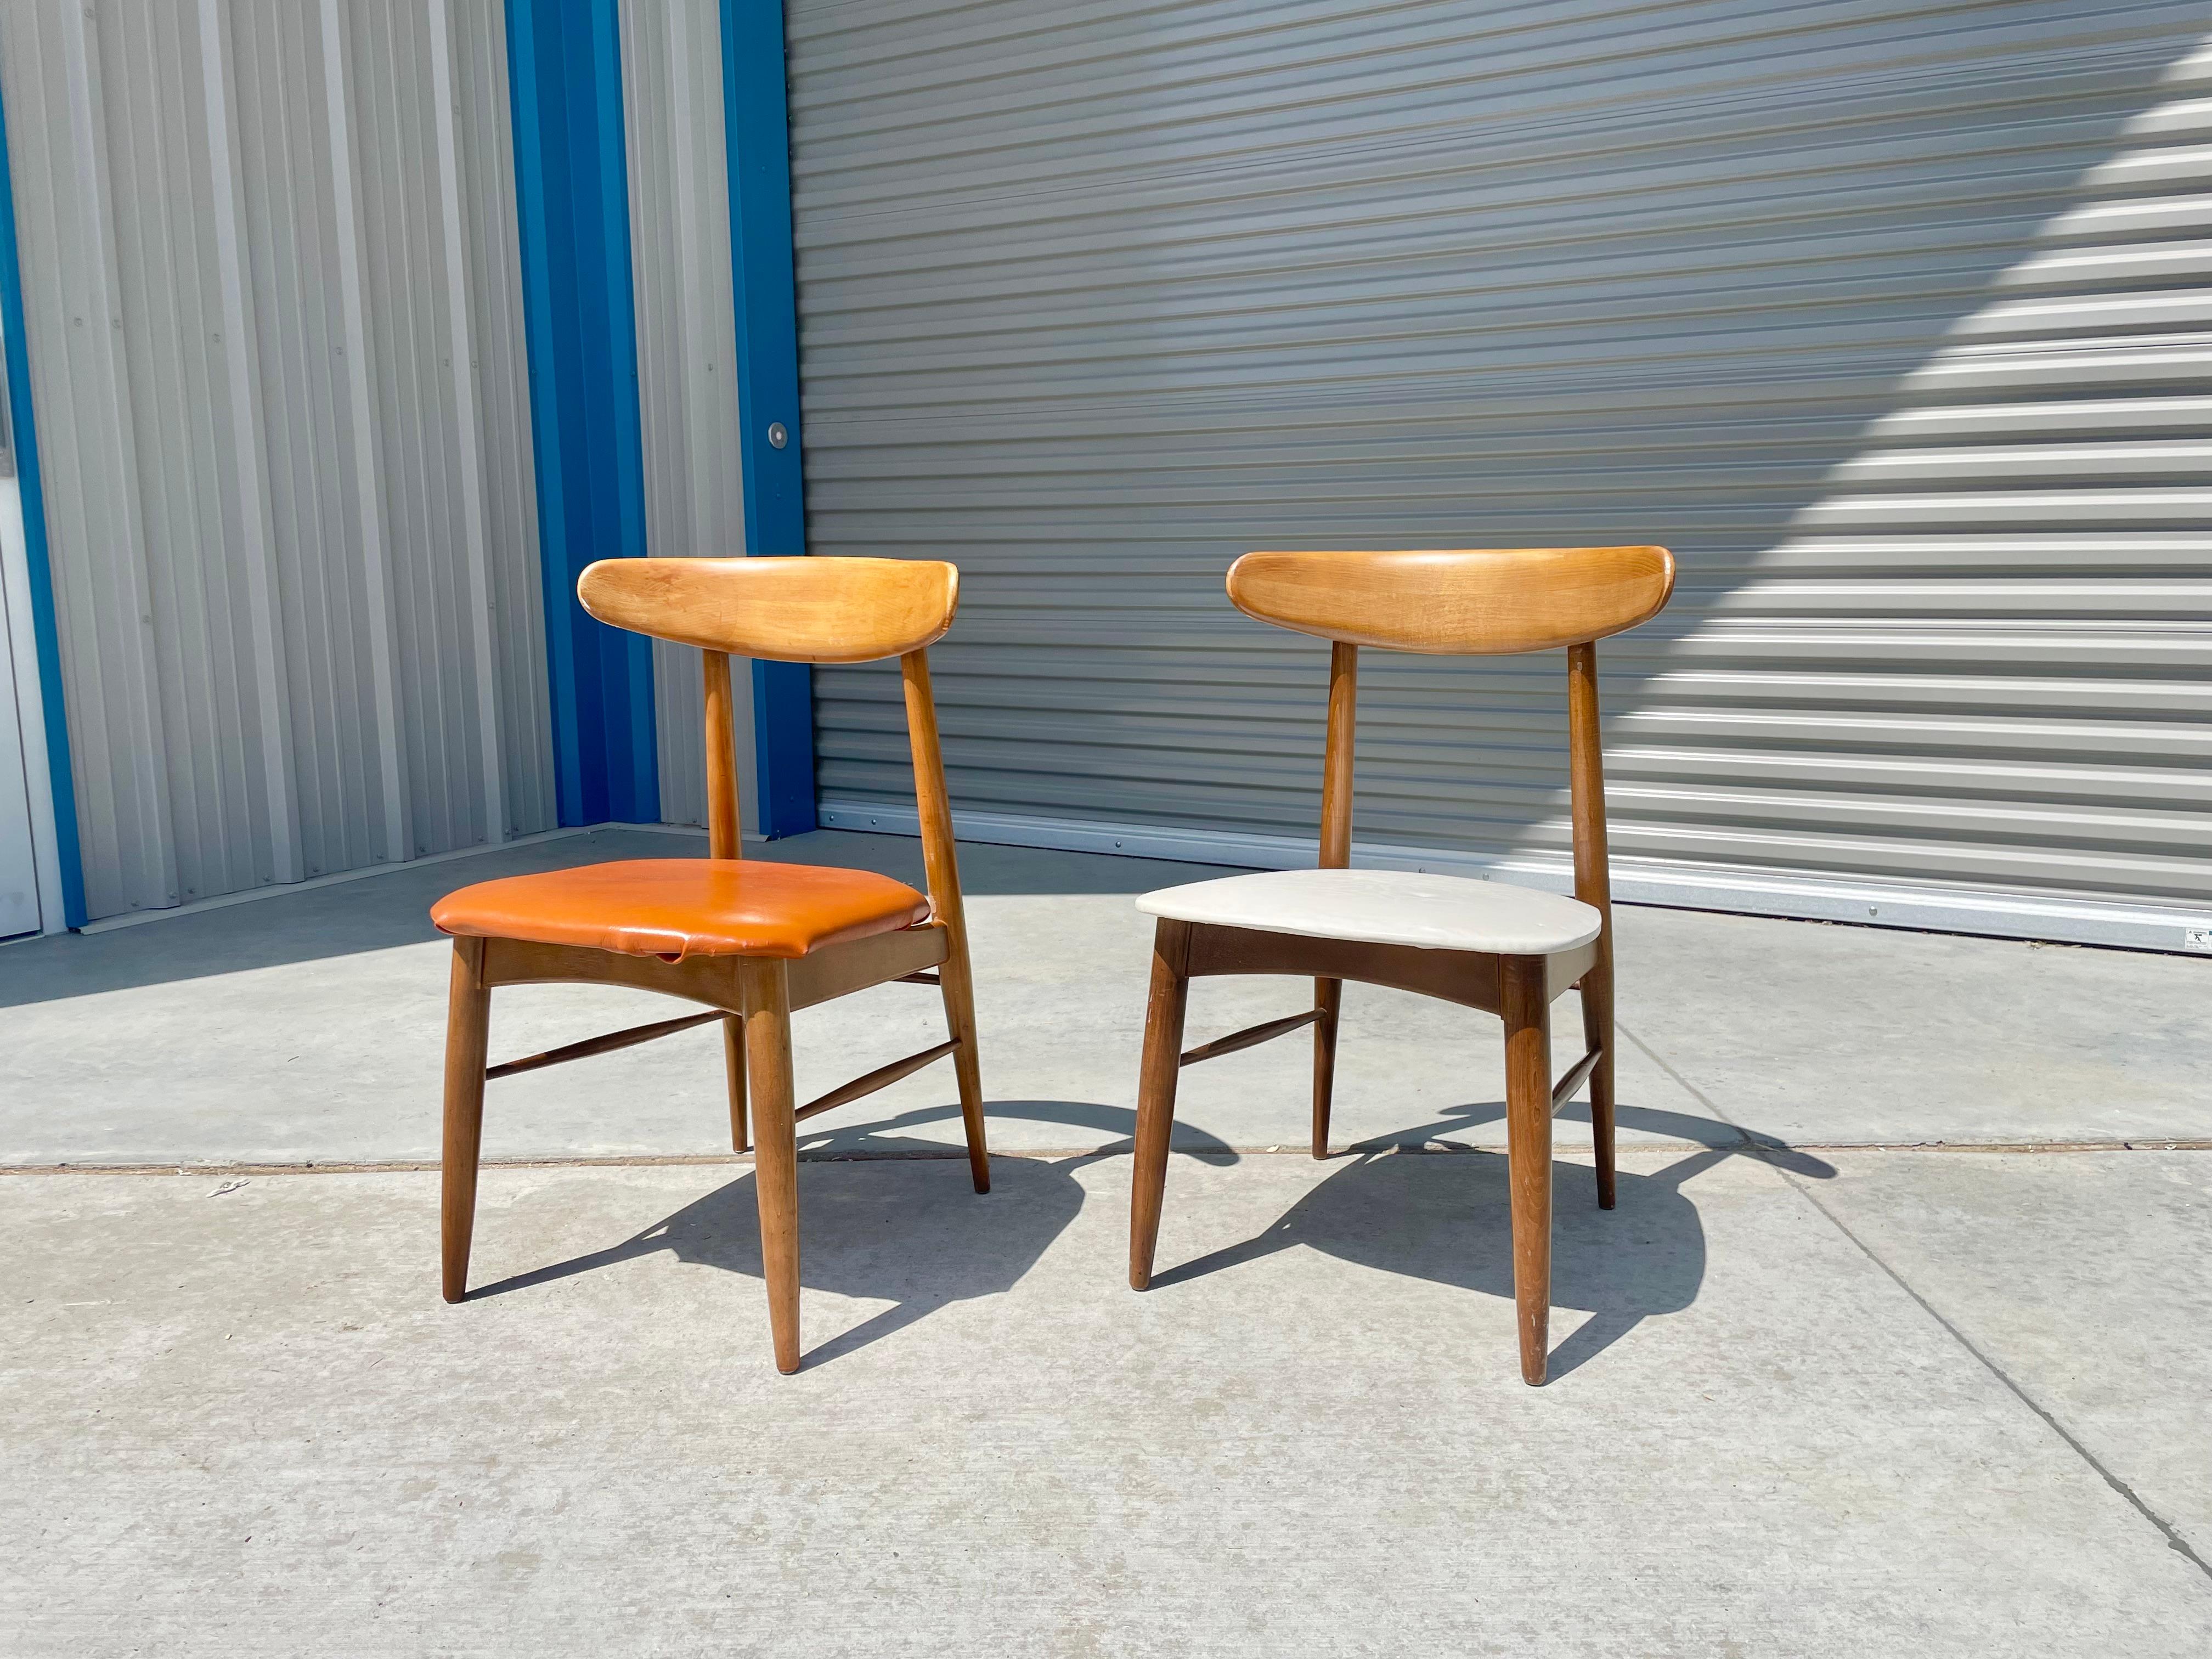 Paire de chaises d'appoint en érable de style moderne du milieu du siècle dernier, conçues et fabriquées aux États-Unis dans les années 1960. Ces chaises font vraiment plaisir à voir, avec un magnifique cadre en bois d'érable, à la fois élégant et